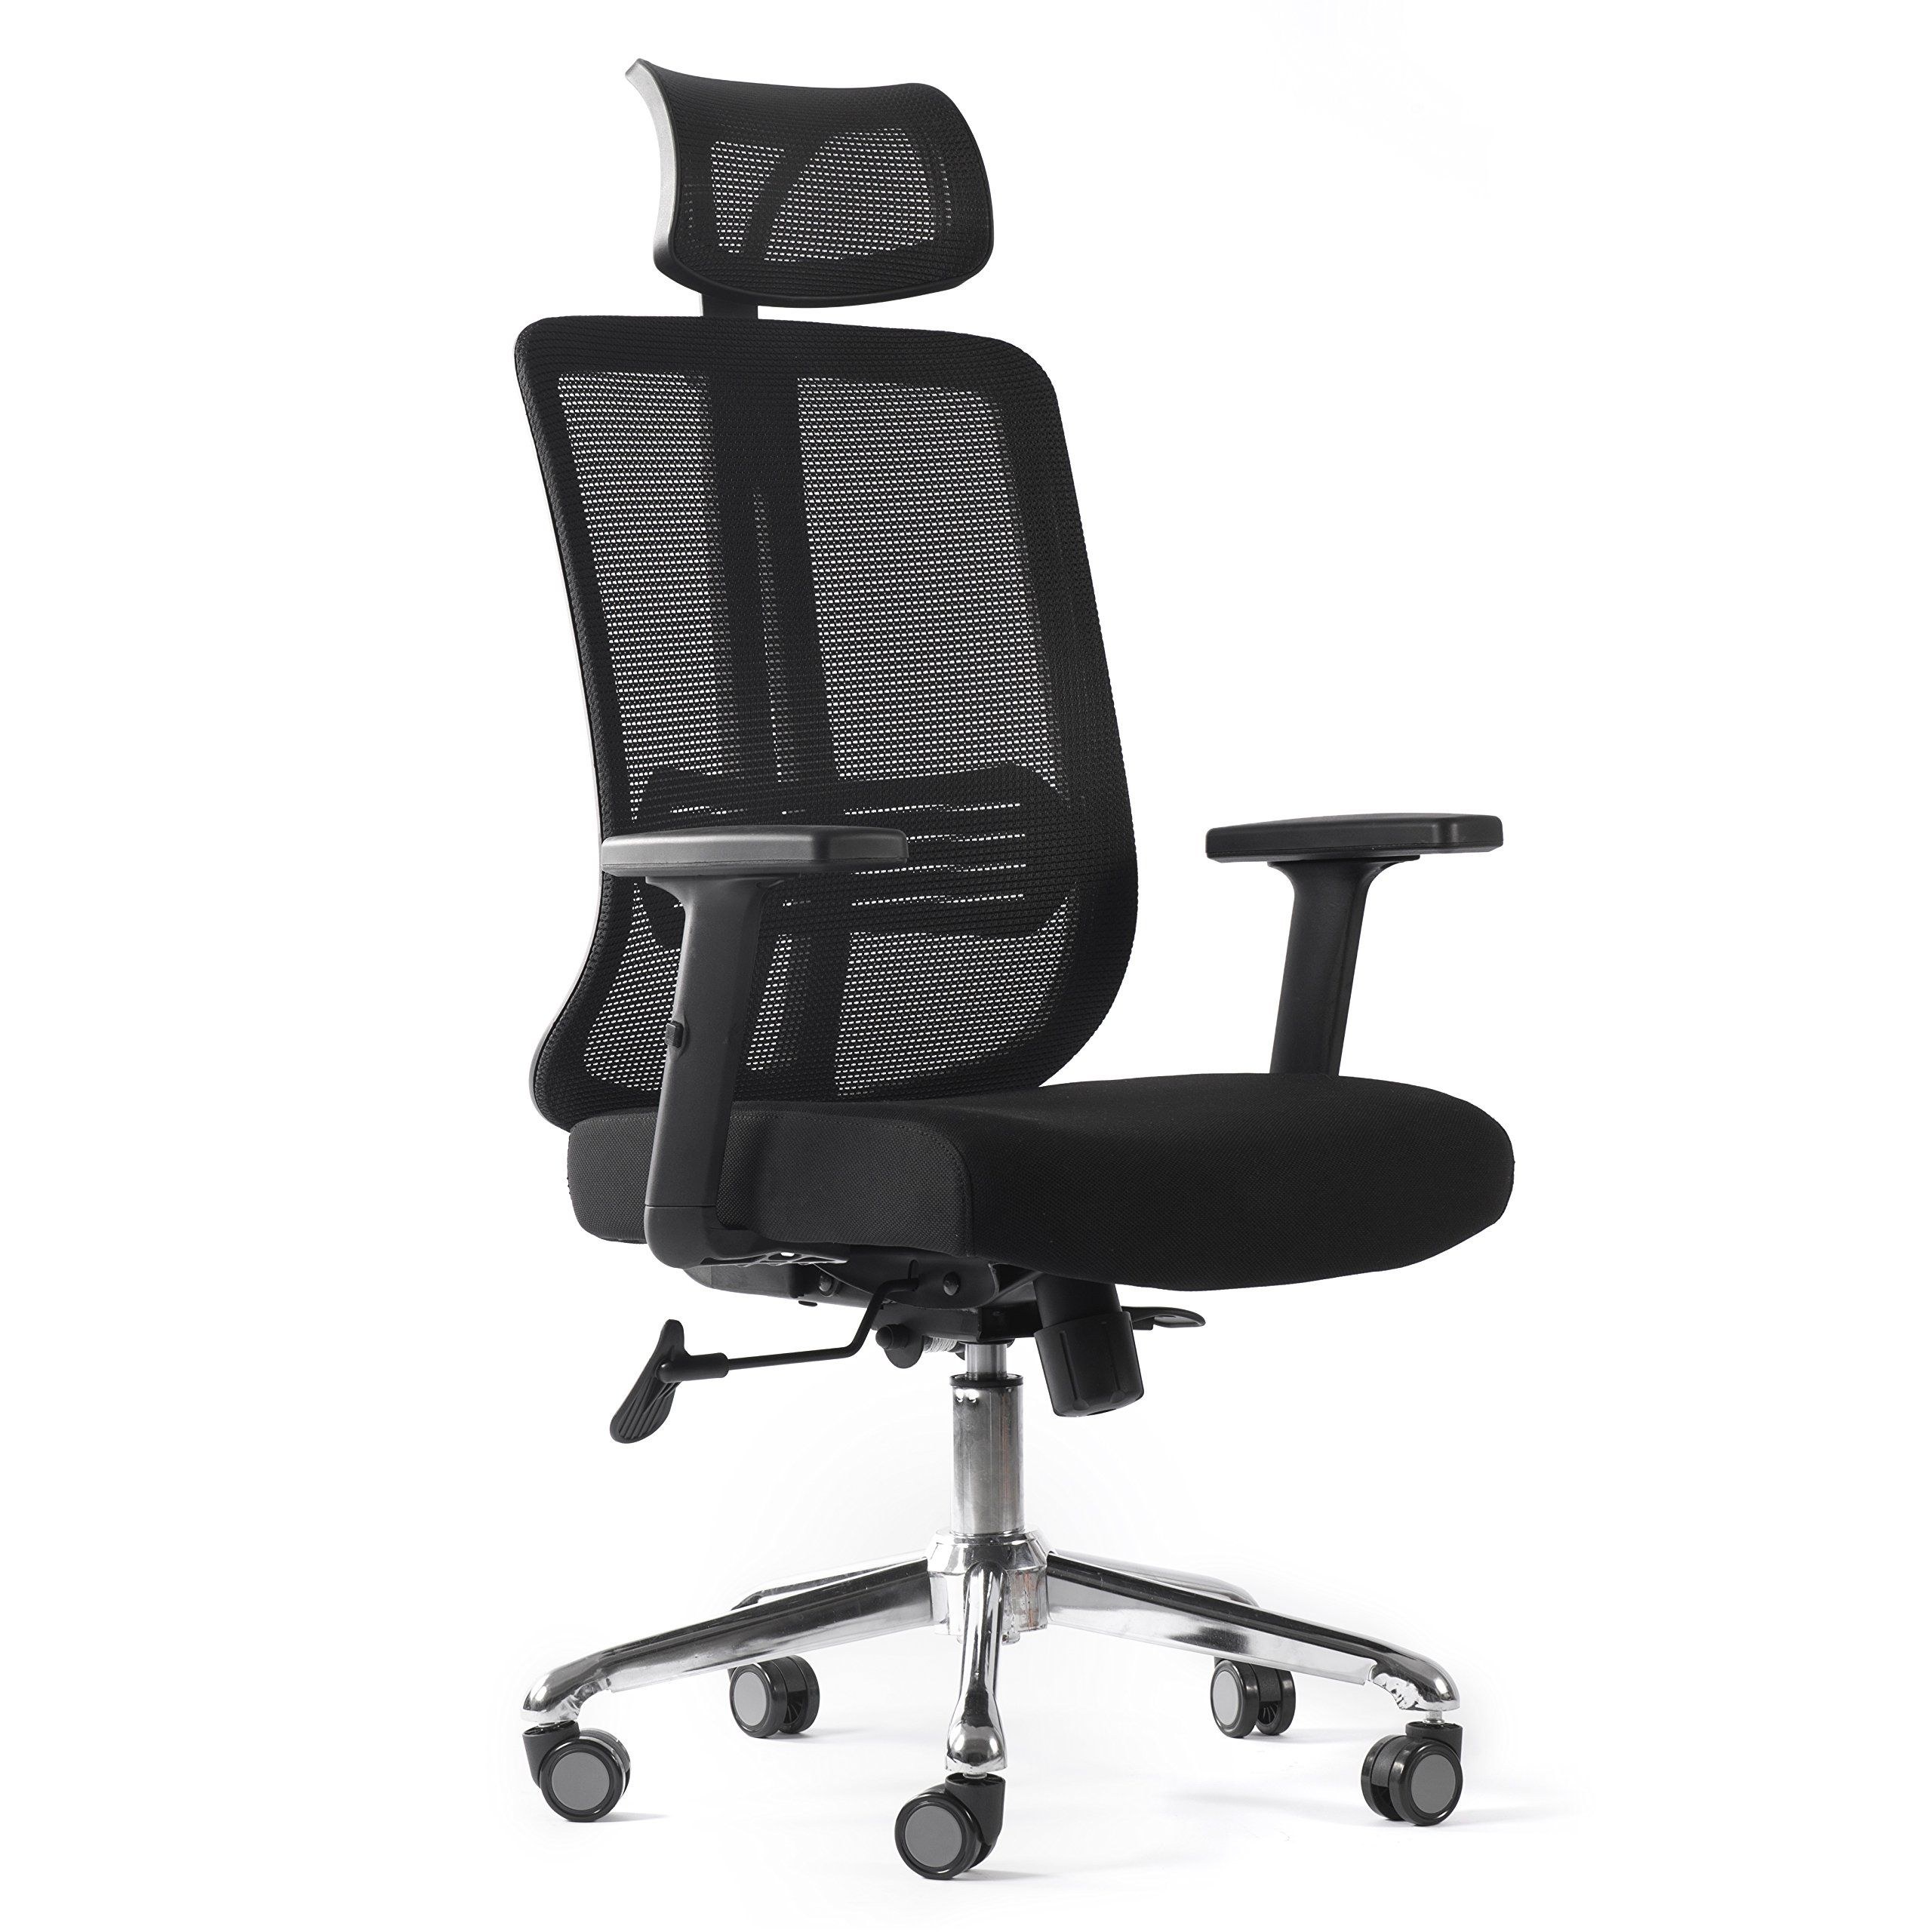 Сетчатая спинка. Кресло офисное Dafna d68-1-h. Кресло офисное сетка. Стул офисный с сетчатой спинкой. Кресло с сетчатой спинкой.